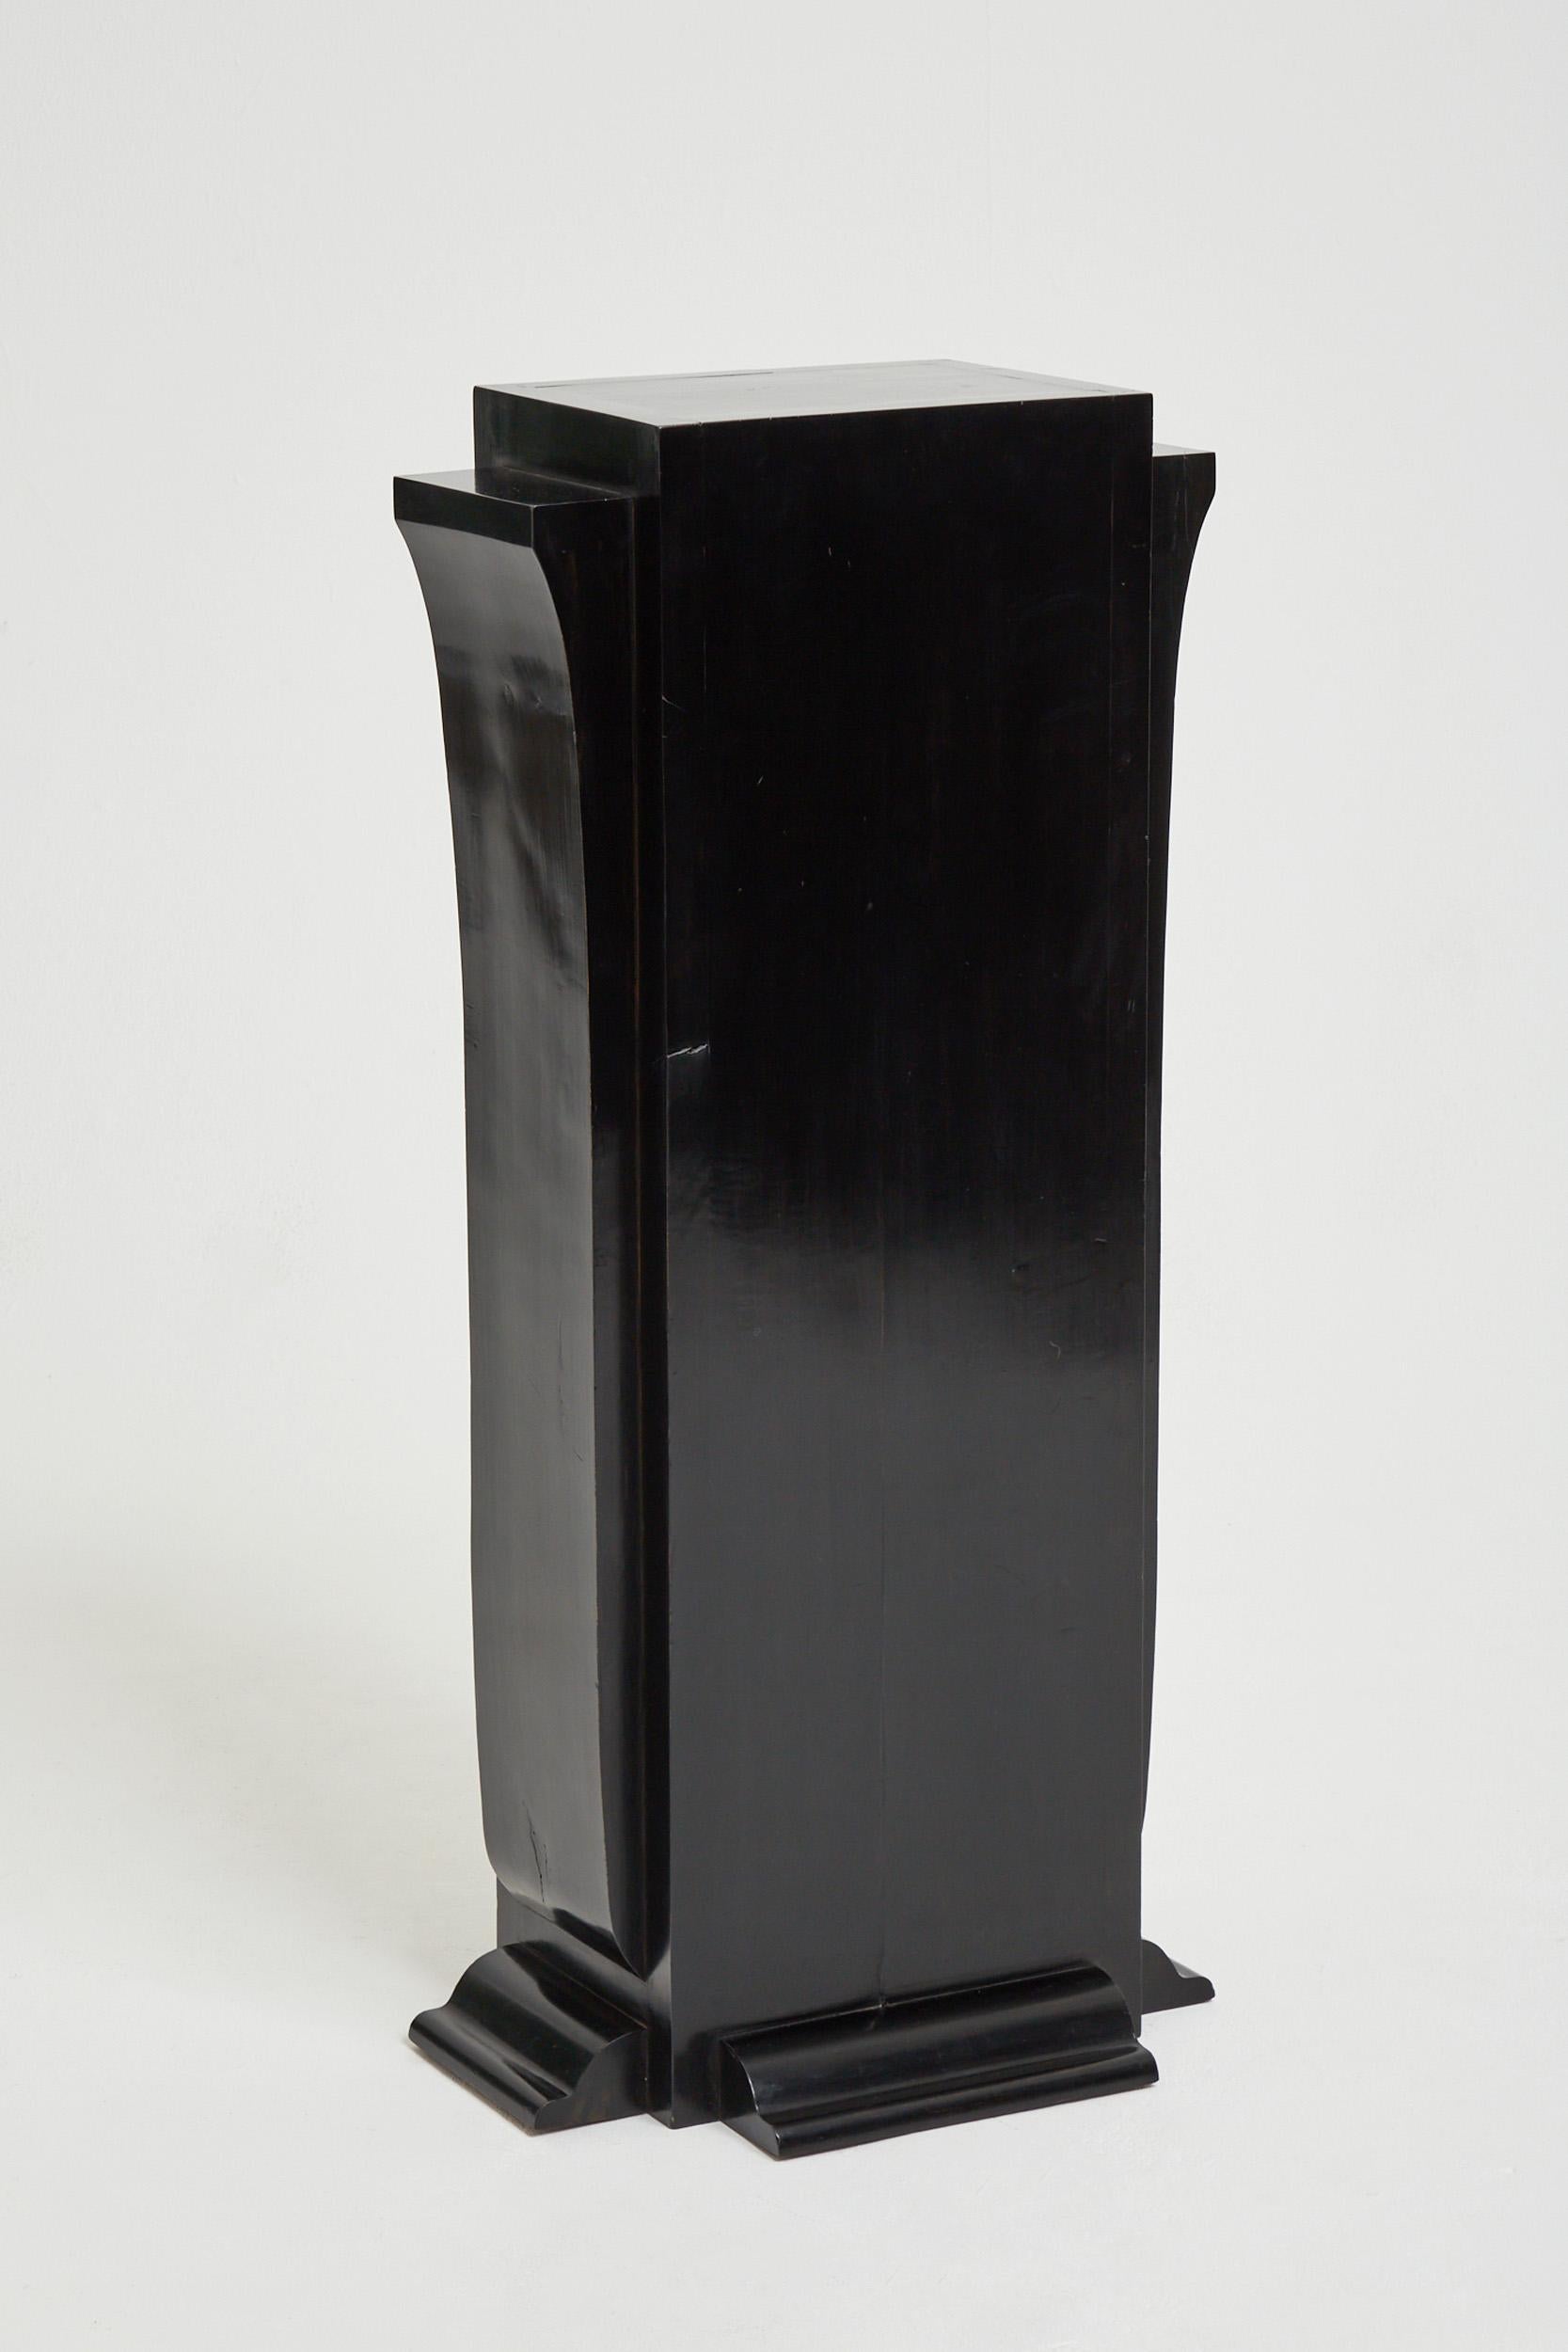 An Art Deco black lacquer pedestal
France, Circa 1930.